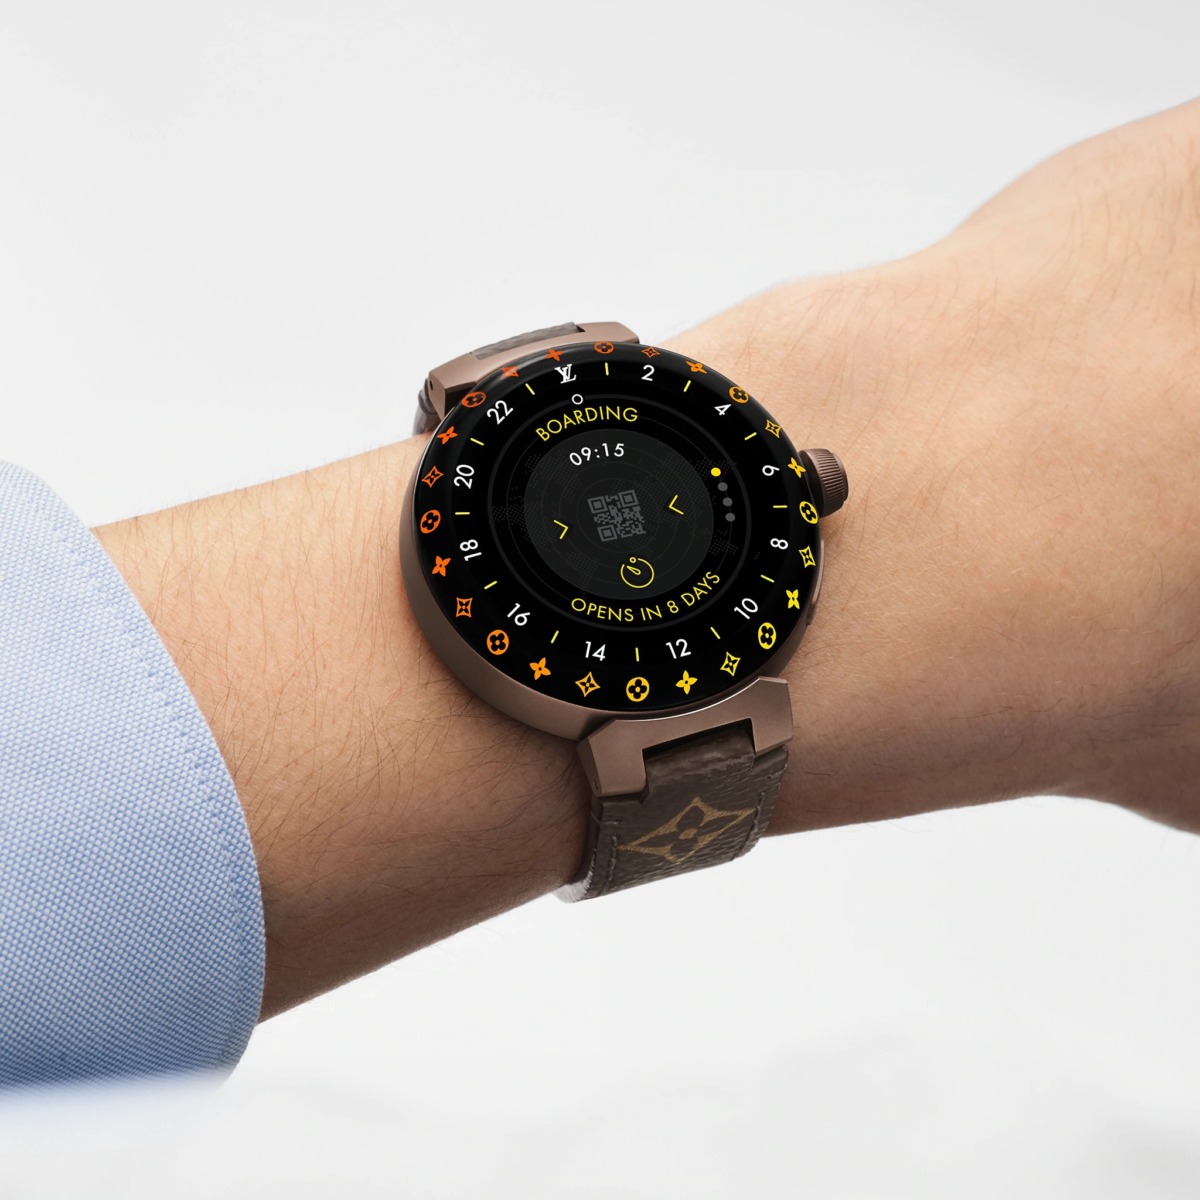 Louis Vuitton revisite sa montre connectée Tambour Horizon